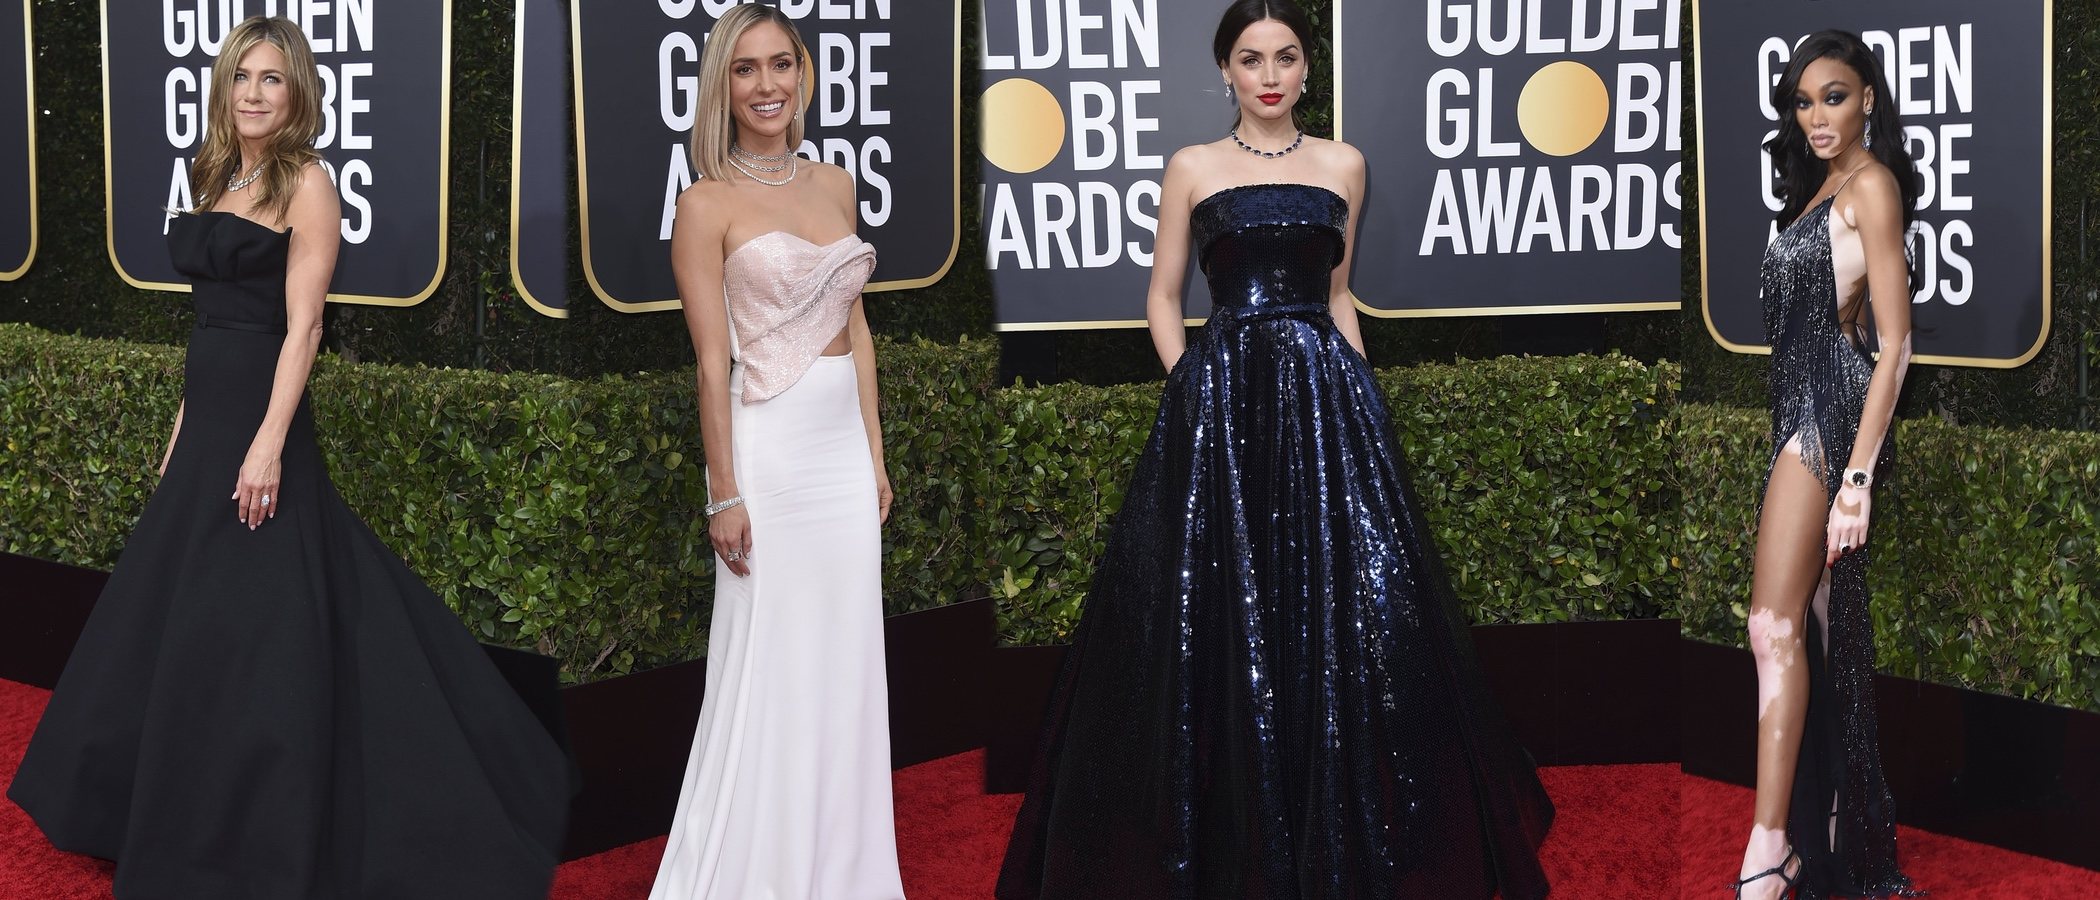 Jennifer Aniston, Ana de Armas y Nicole Kidman, entre las mejor vestidas de los Globos de Oro 2020